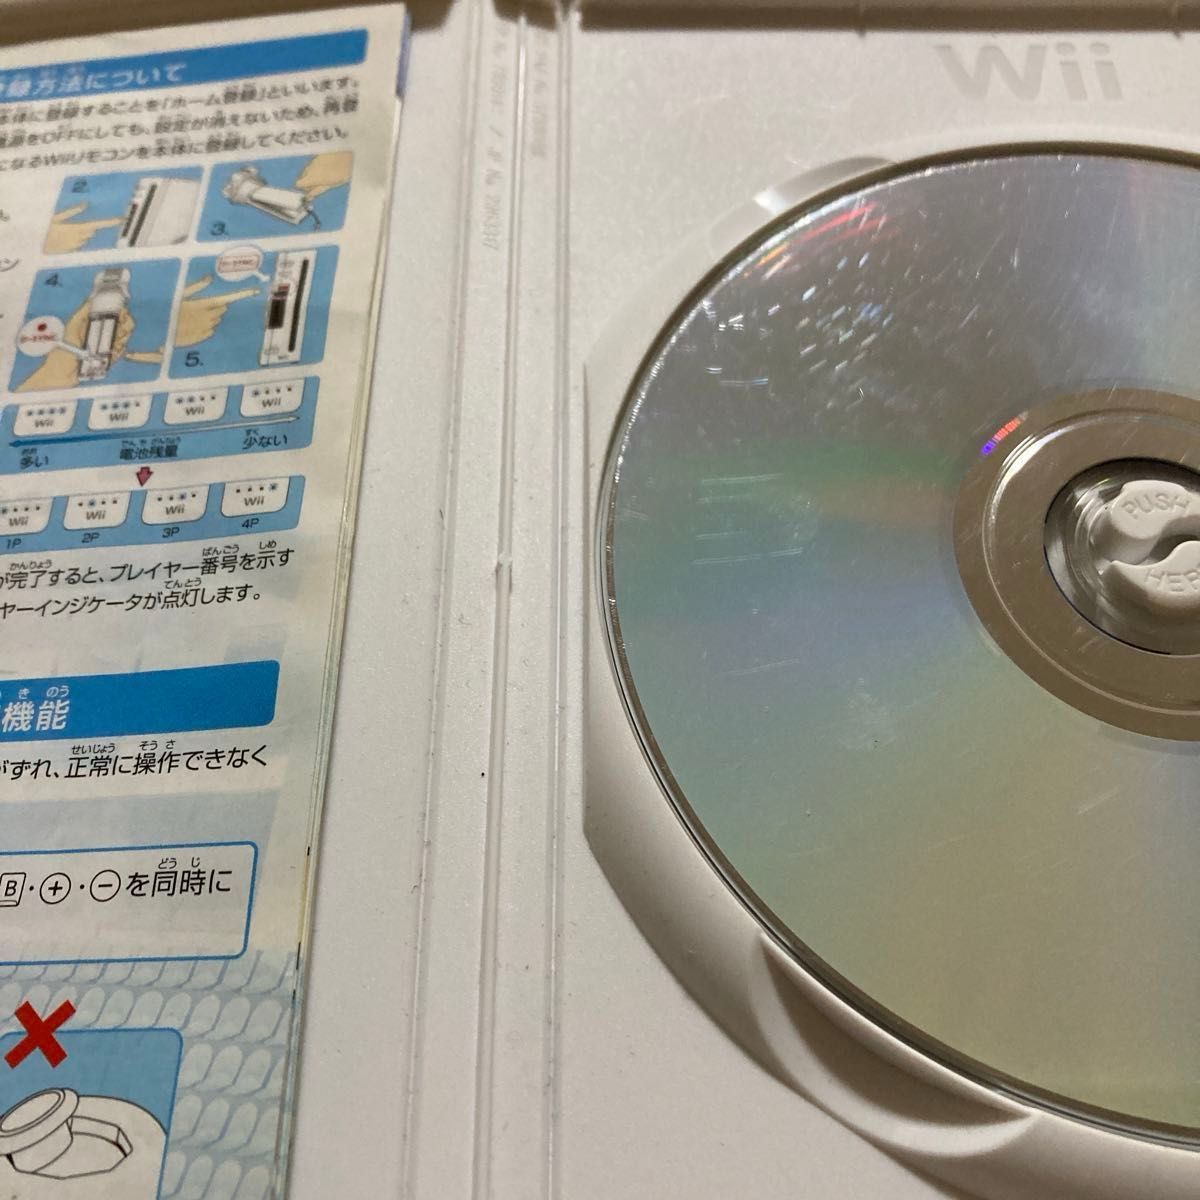 【Wii】マリオカート･マリオスポーツミックス･ニュースーパーマリオブラザーズ